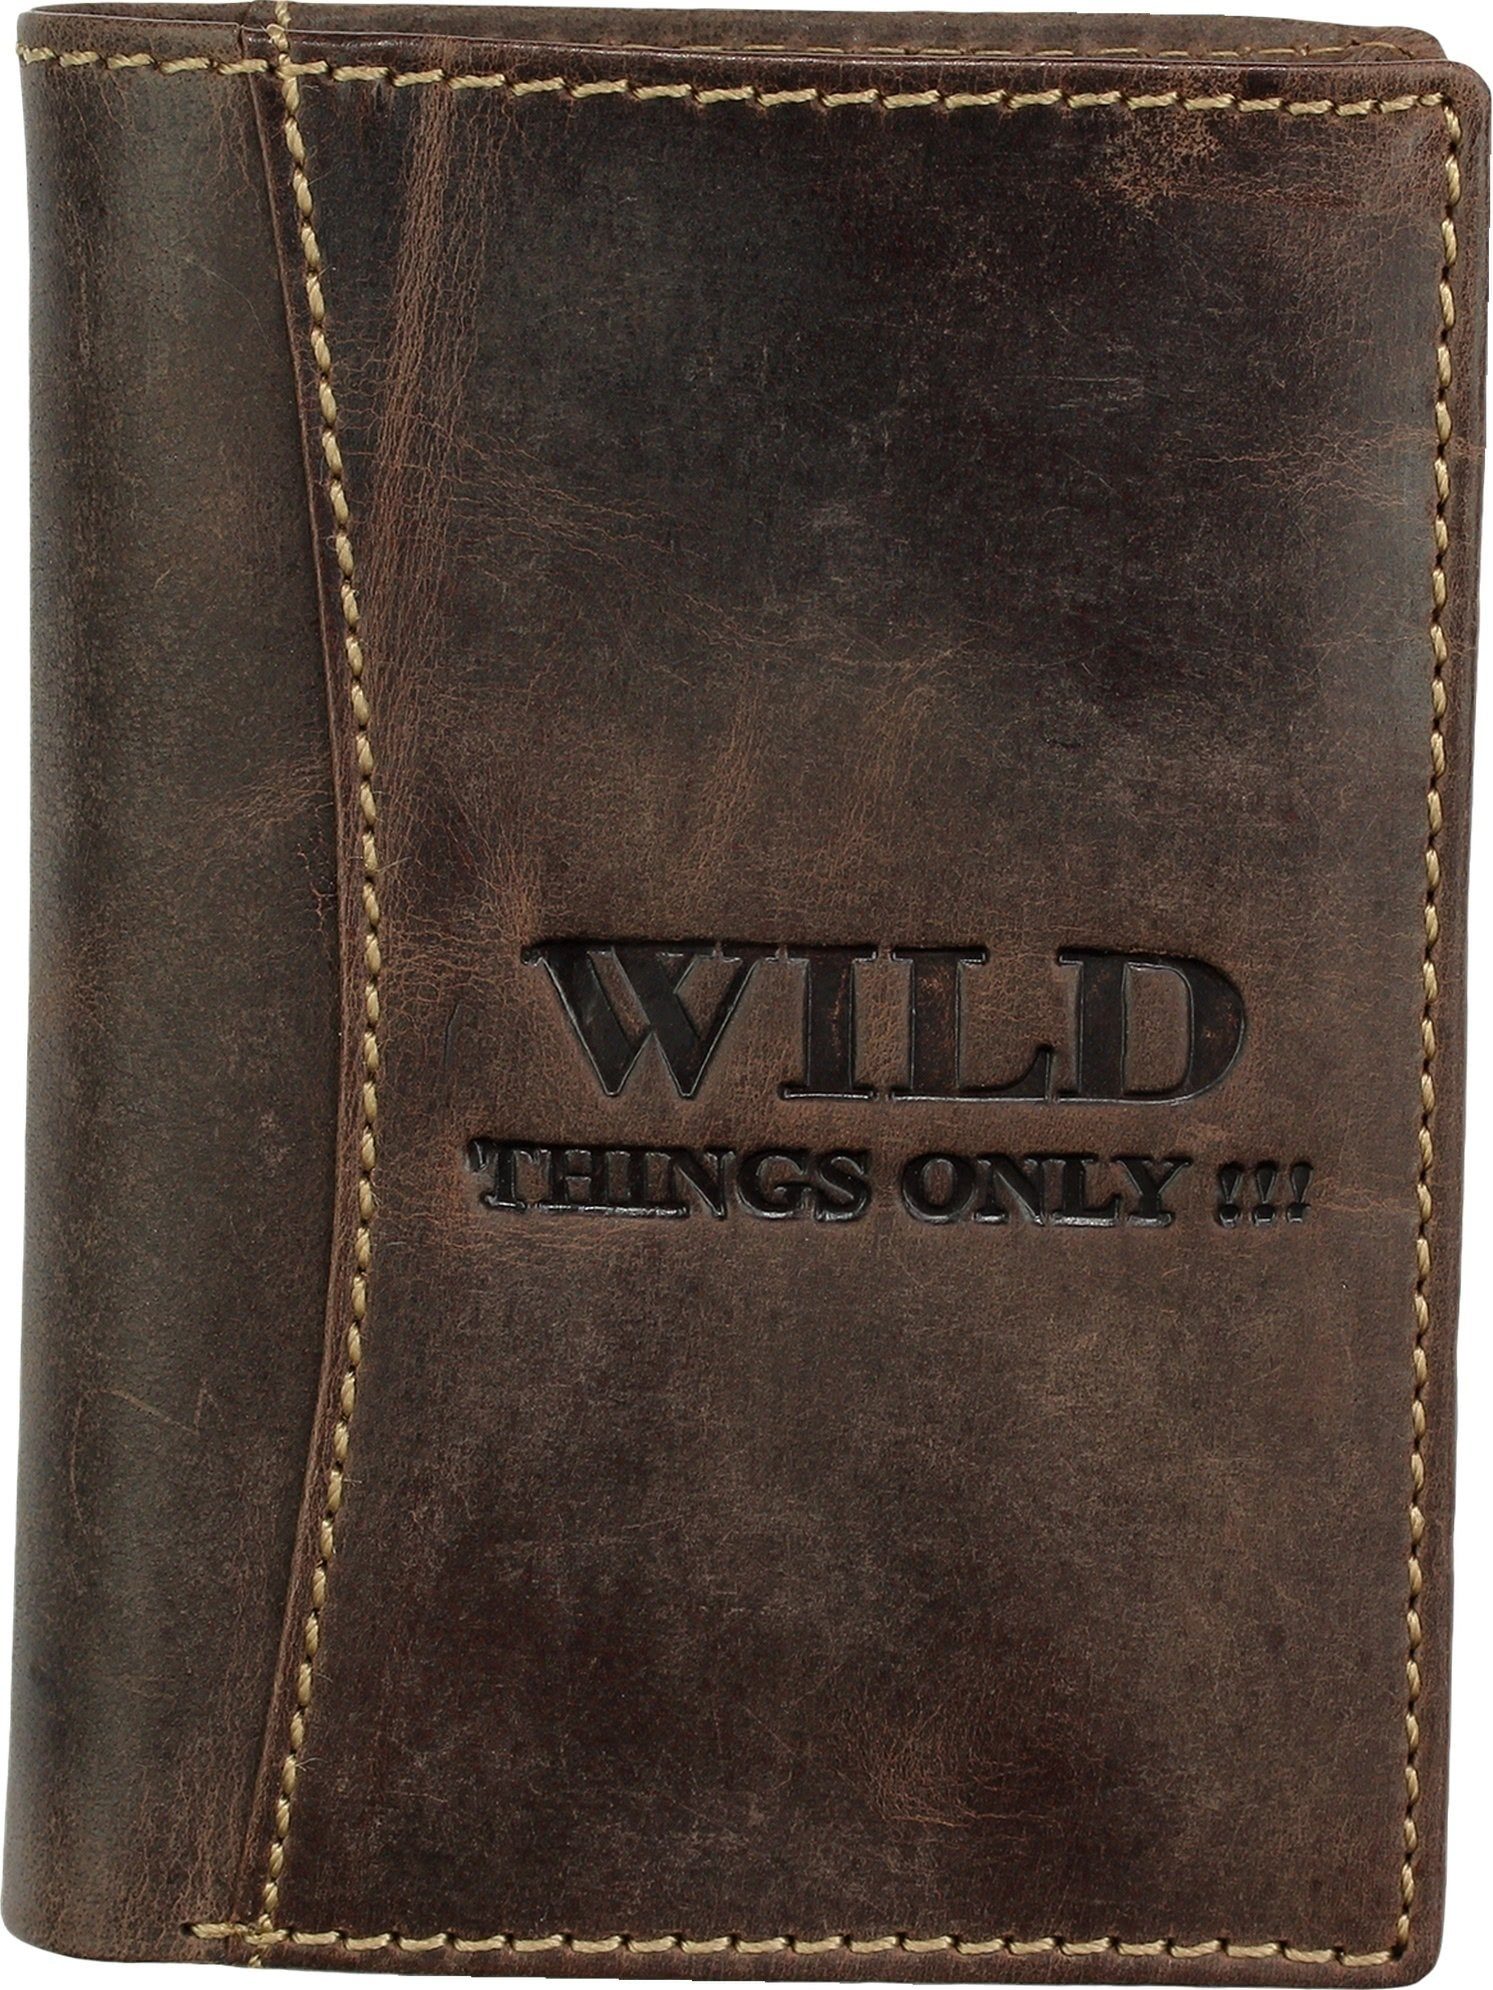 Wild Things Only !!! Geldbörse Wild Things Only Unisex Brieftasche ( Portemonnaie), Herren, Damen Portemonnaie Echtleder Größe ca. 9,5cm, braun